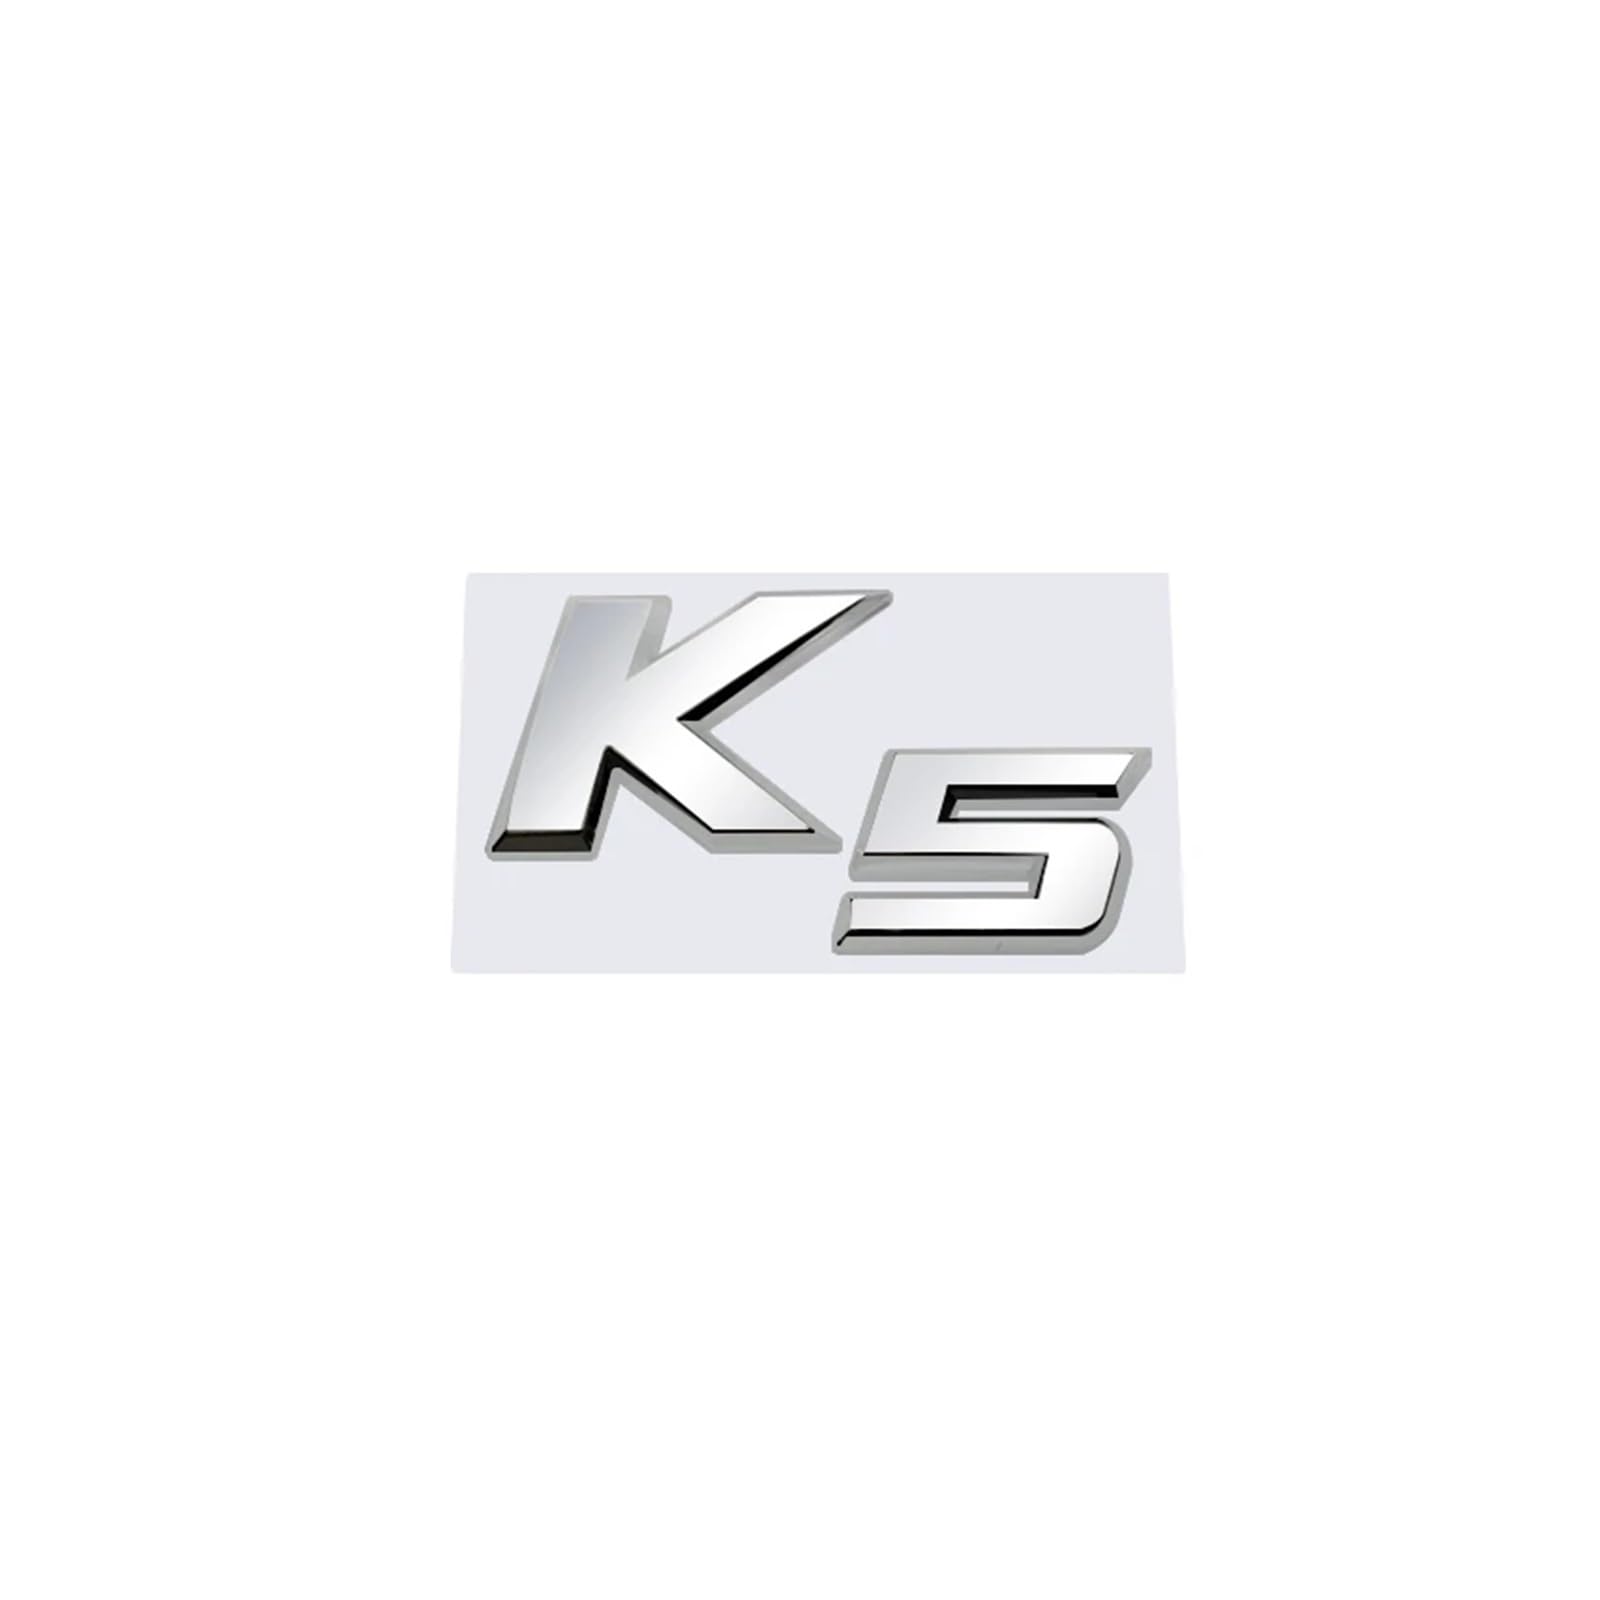 AQXYWQOL Auto-Styling-Metall-Kofferraum-Buchstaben-Aufkleber-Aufkleber, kompatibel mit K2 K3 K4 K5 KX7 Abzeichen-Emblem-Aufkleber Farbe ist konstant, verblasst nicht und beschädigt(4) von AQXYWQOL